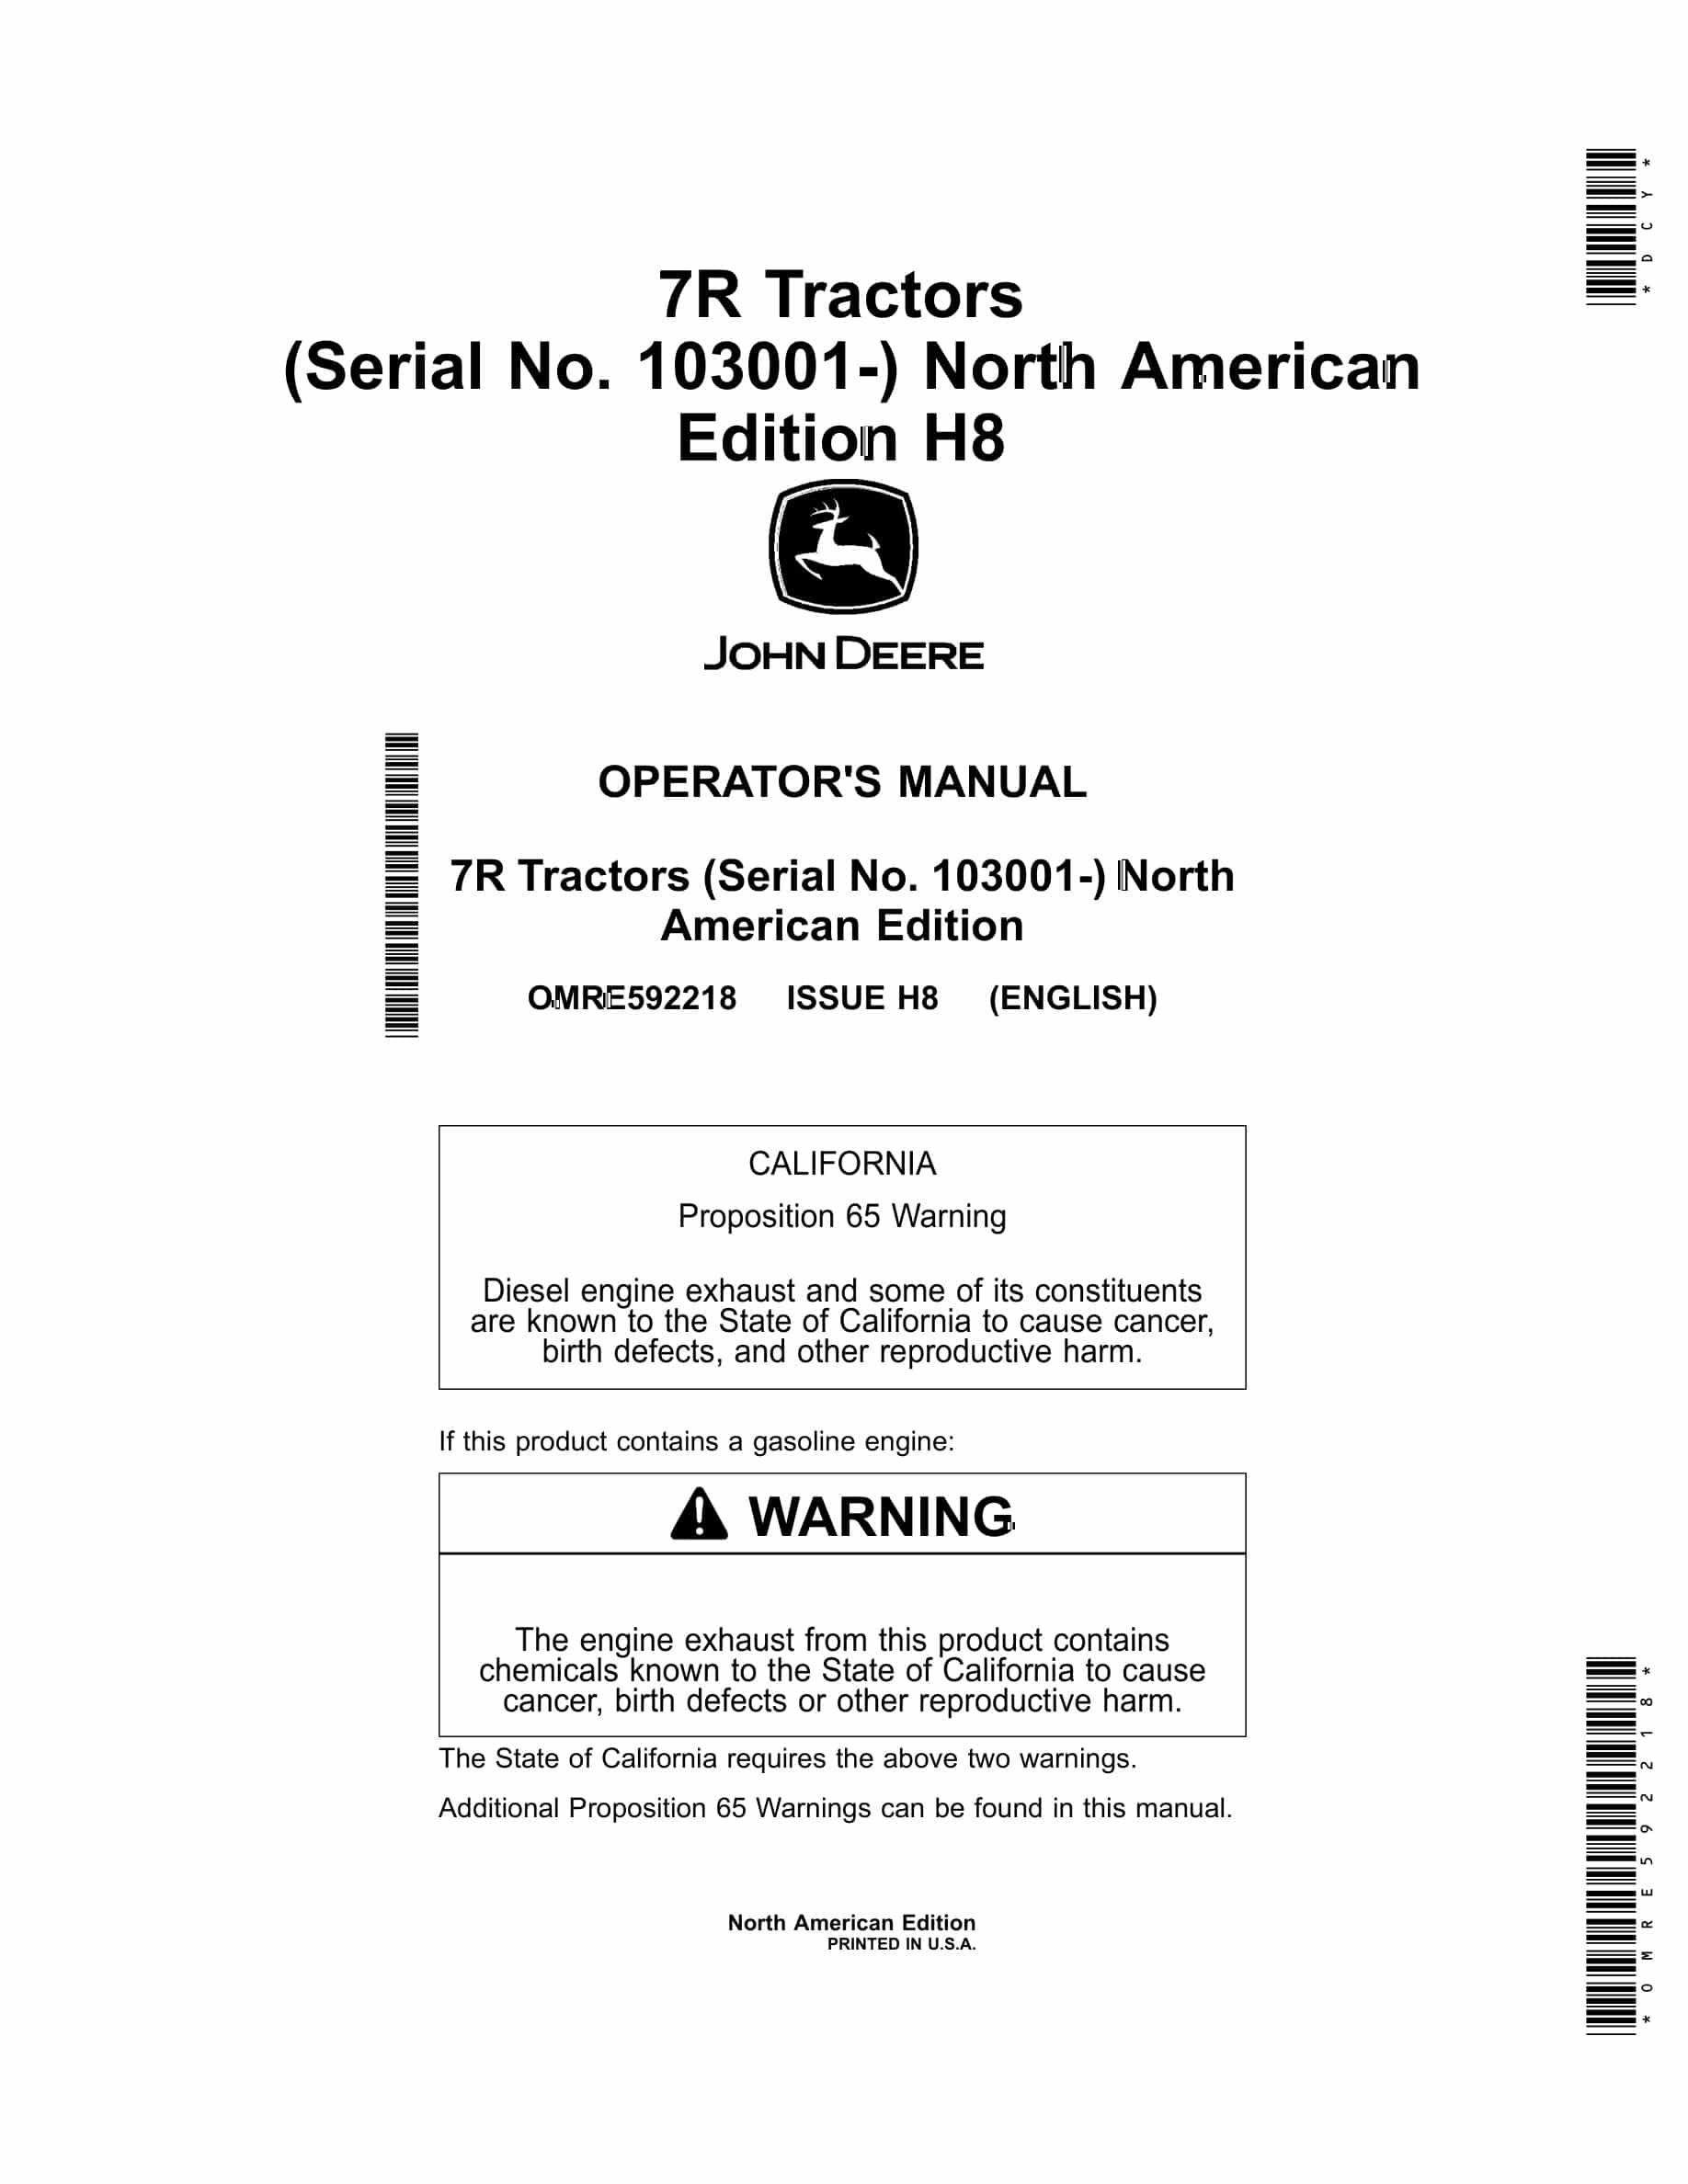 John Deere 7R Tractor Operator Manual OMRE592218-1